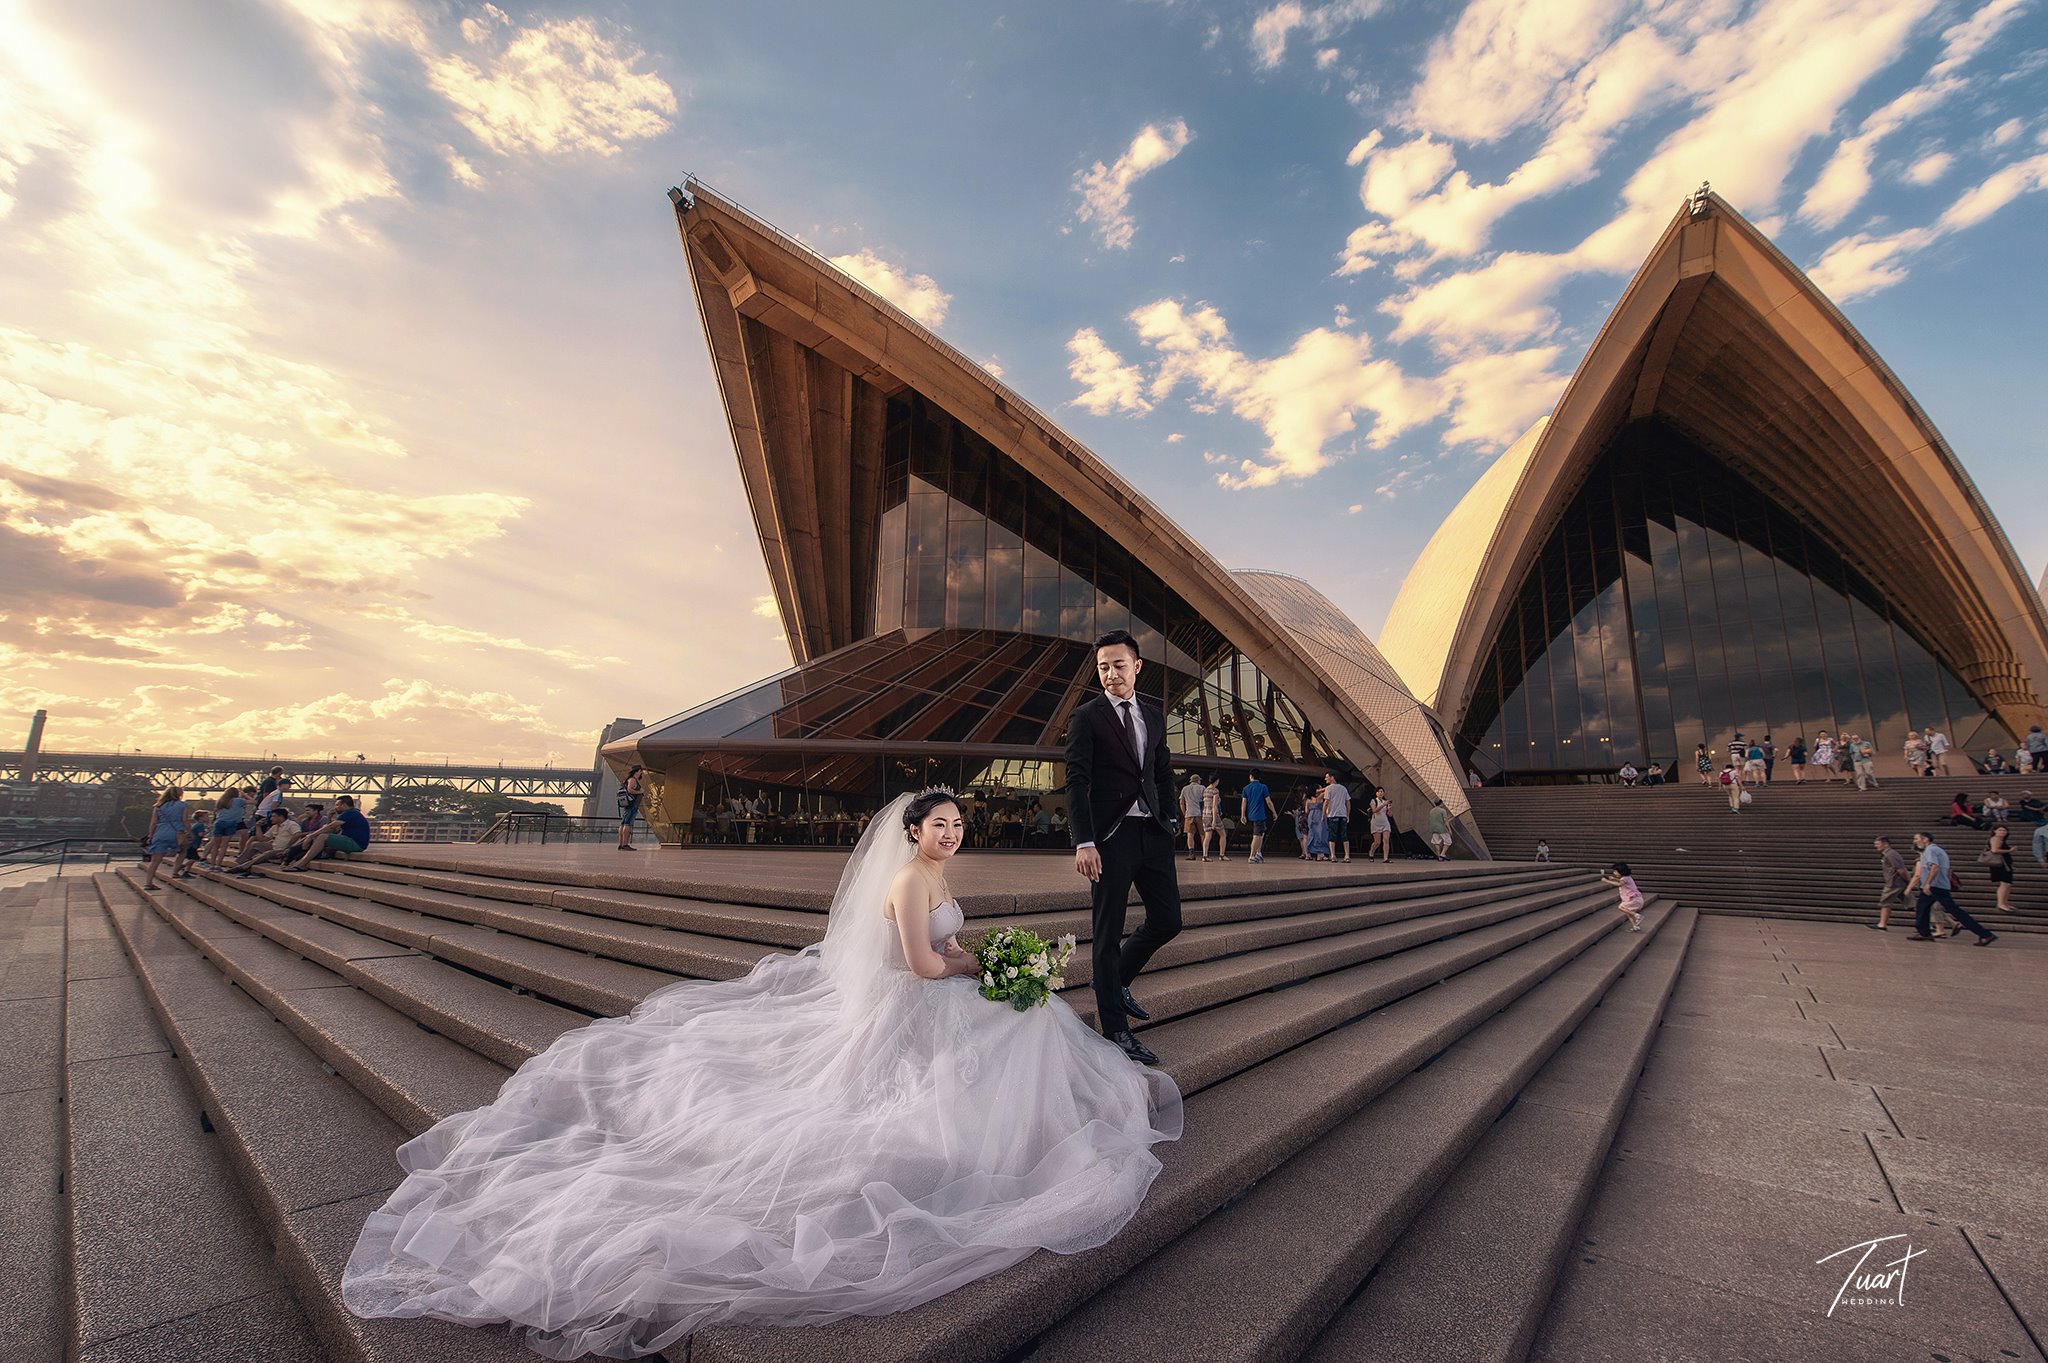 Album chụp ảnh cưới đẹp tại Australia: Jack-Rose 1